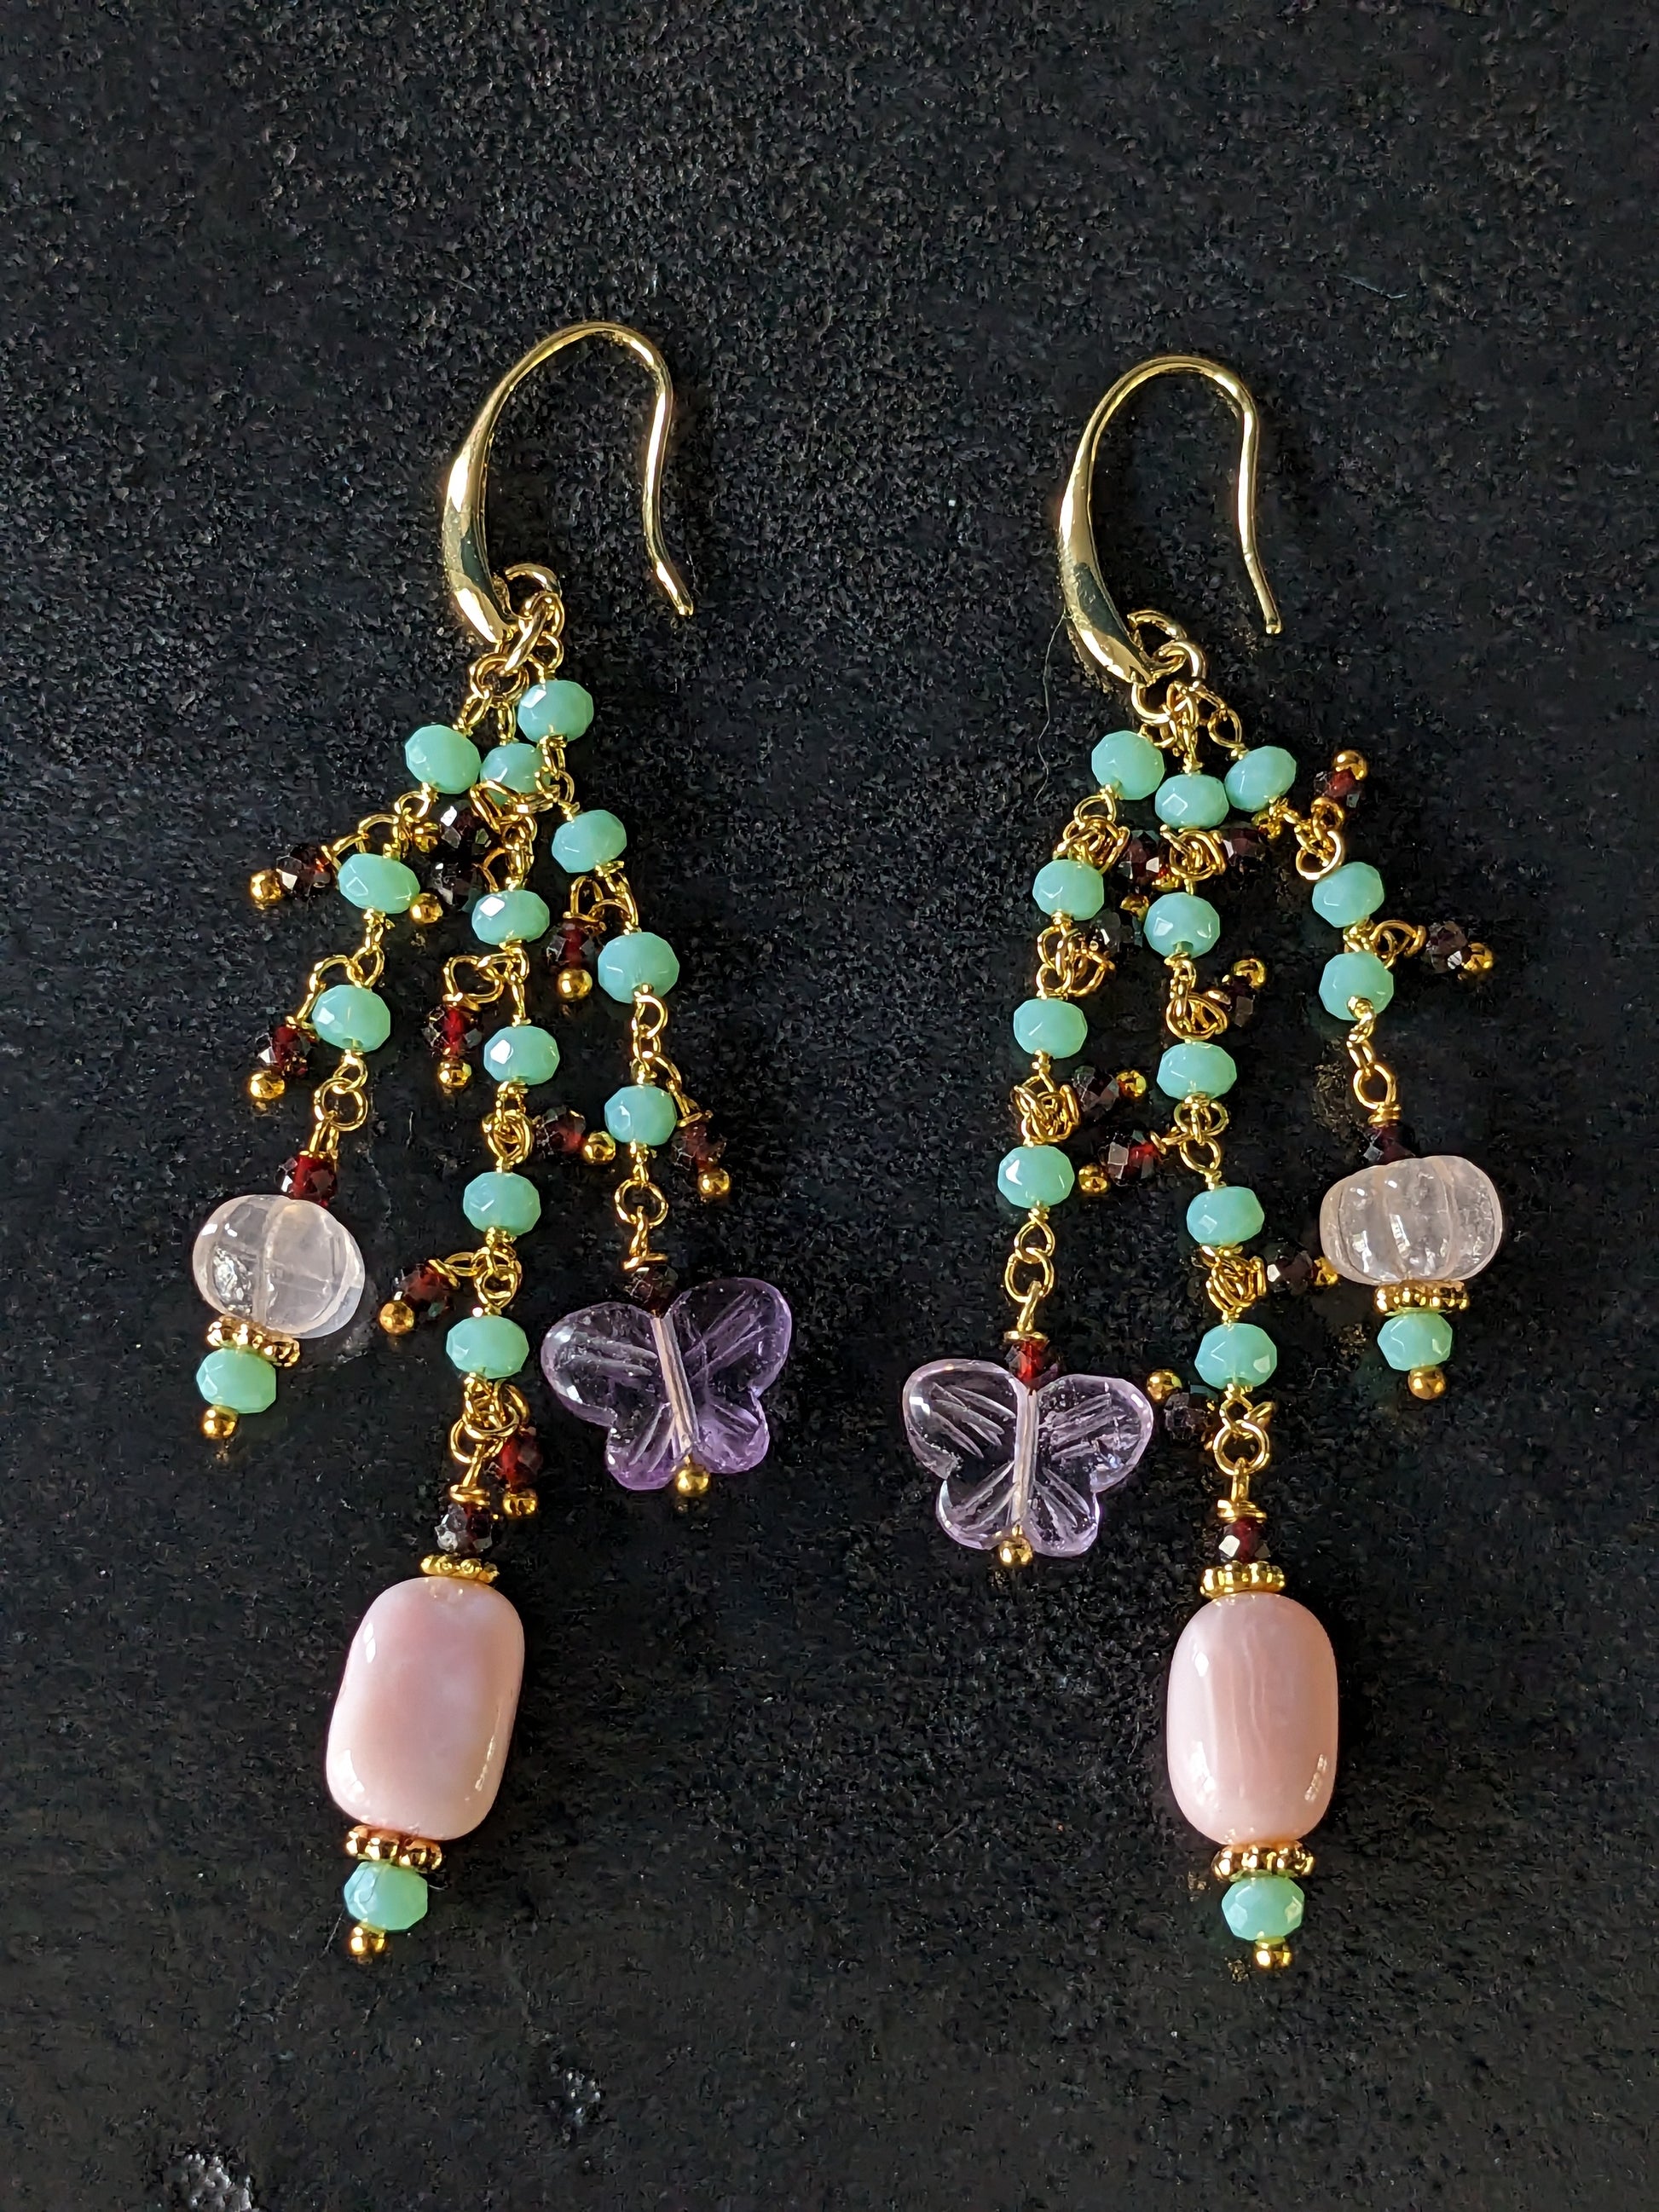 Boucles d'oreilles Mumtaz faites à la main, ornées de quartz rose sculpté, opale rose, et papillons d'améthyste sur une chaînette plaquée or cristal turquoise clair